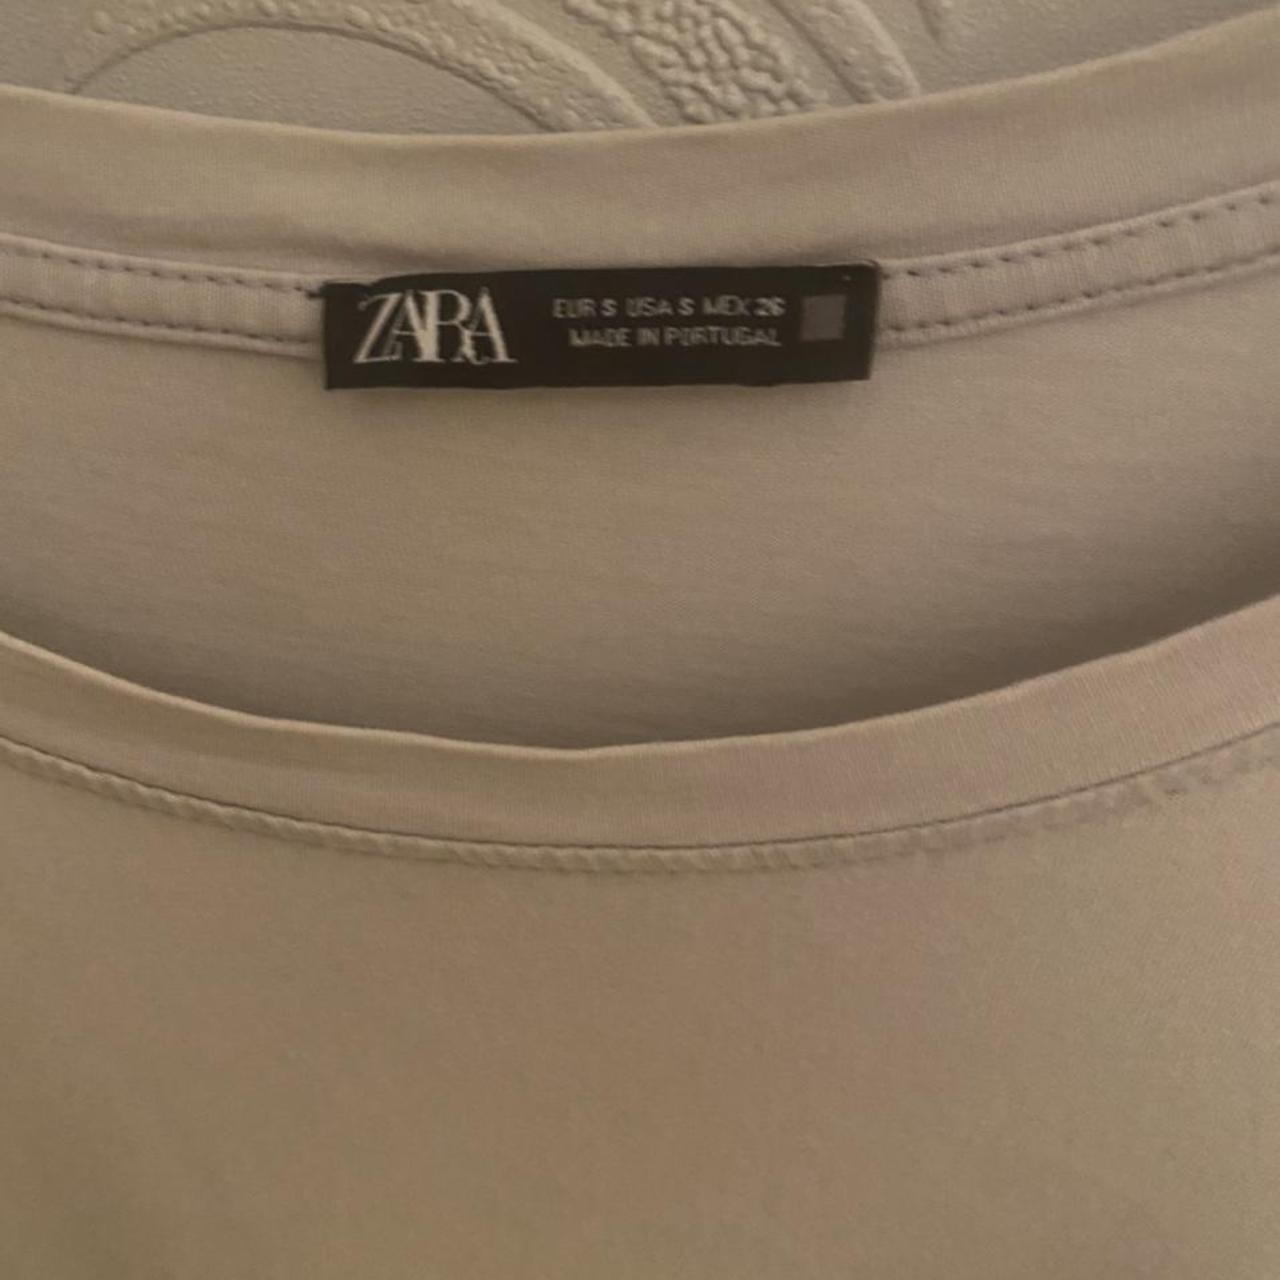 Oversized T shirt from Zara - Depop